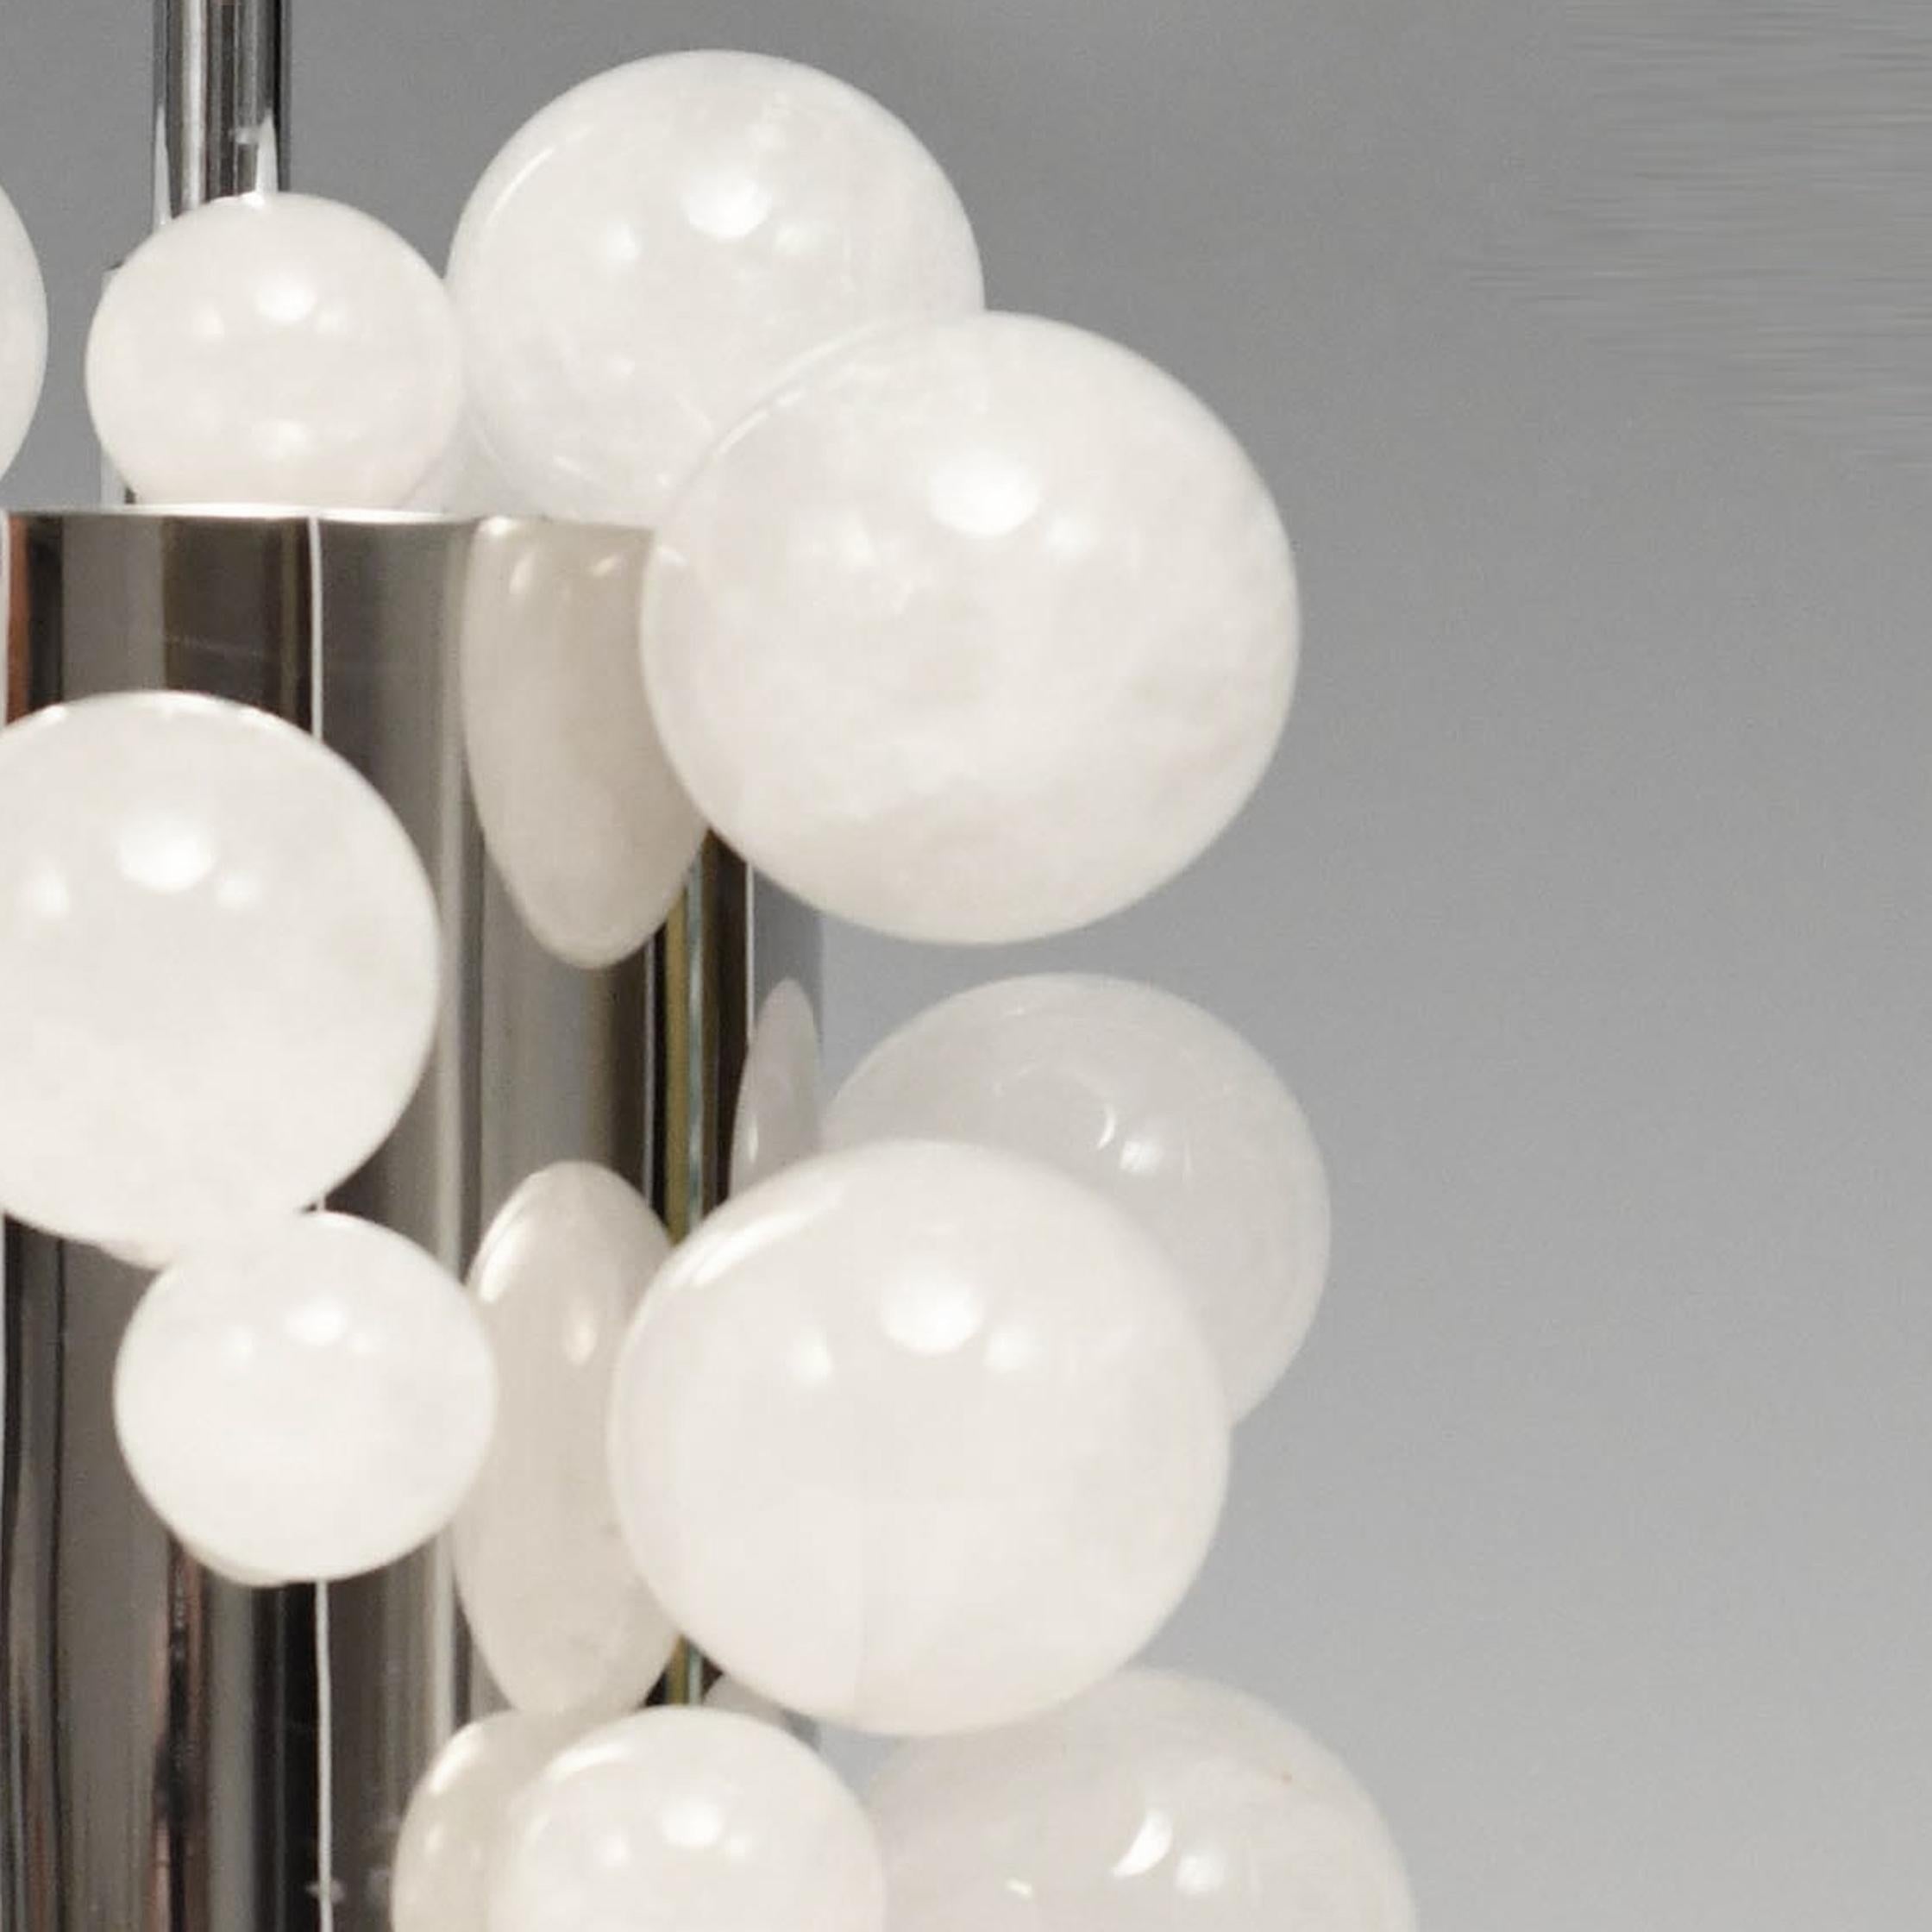 Une paire de lampes à bulles en cristal de roche de petite taille avec un corps en nickel poli. Créé par Phoenix Gallery NYC.
Jusqu'au sommet des bulles de cristal de roche : 13